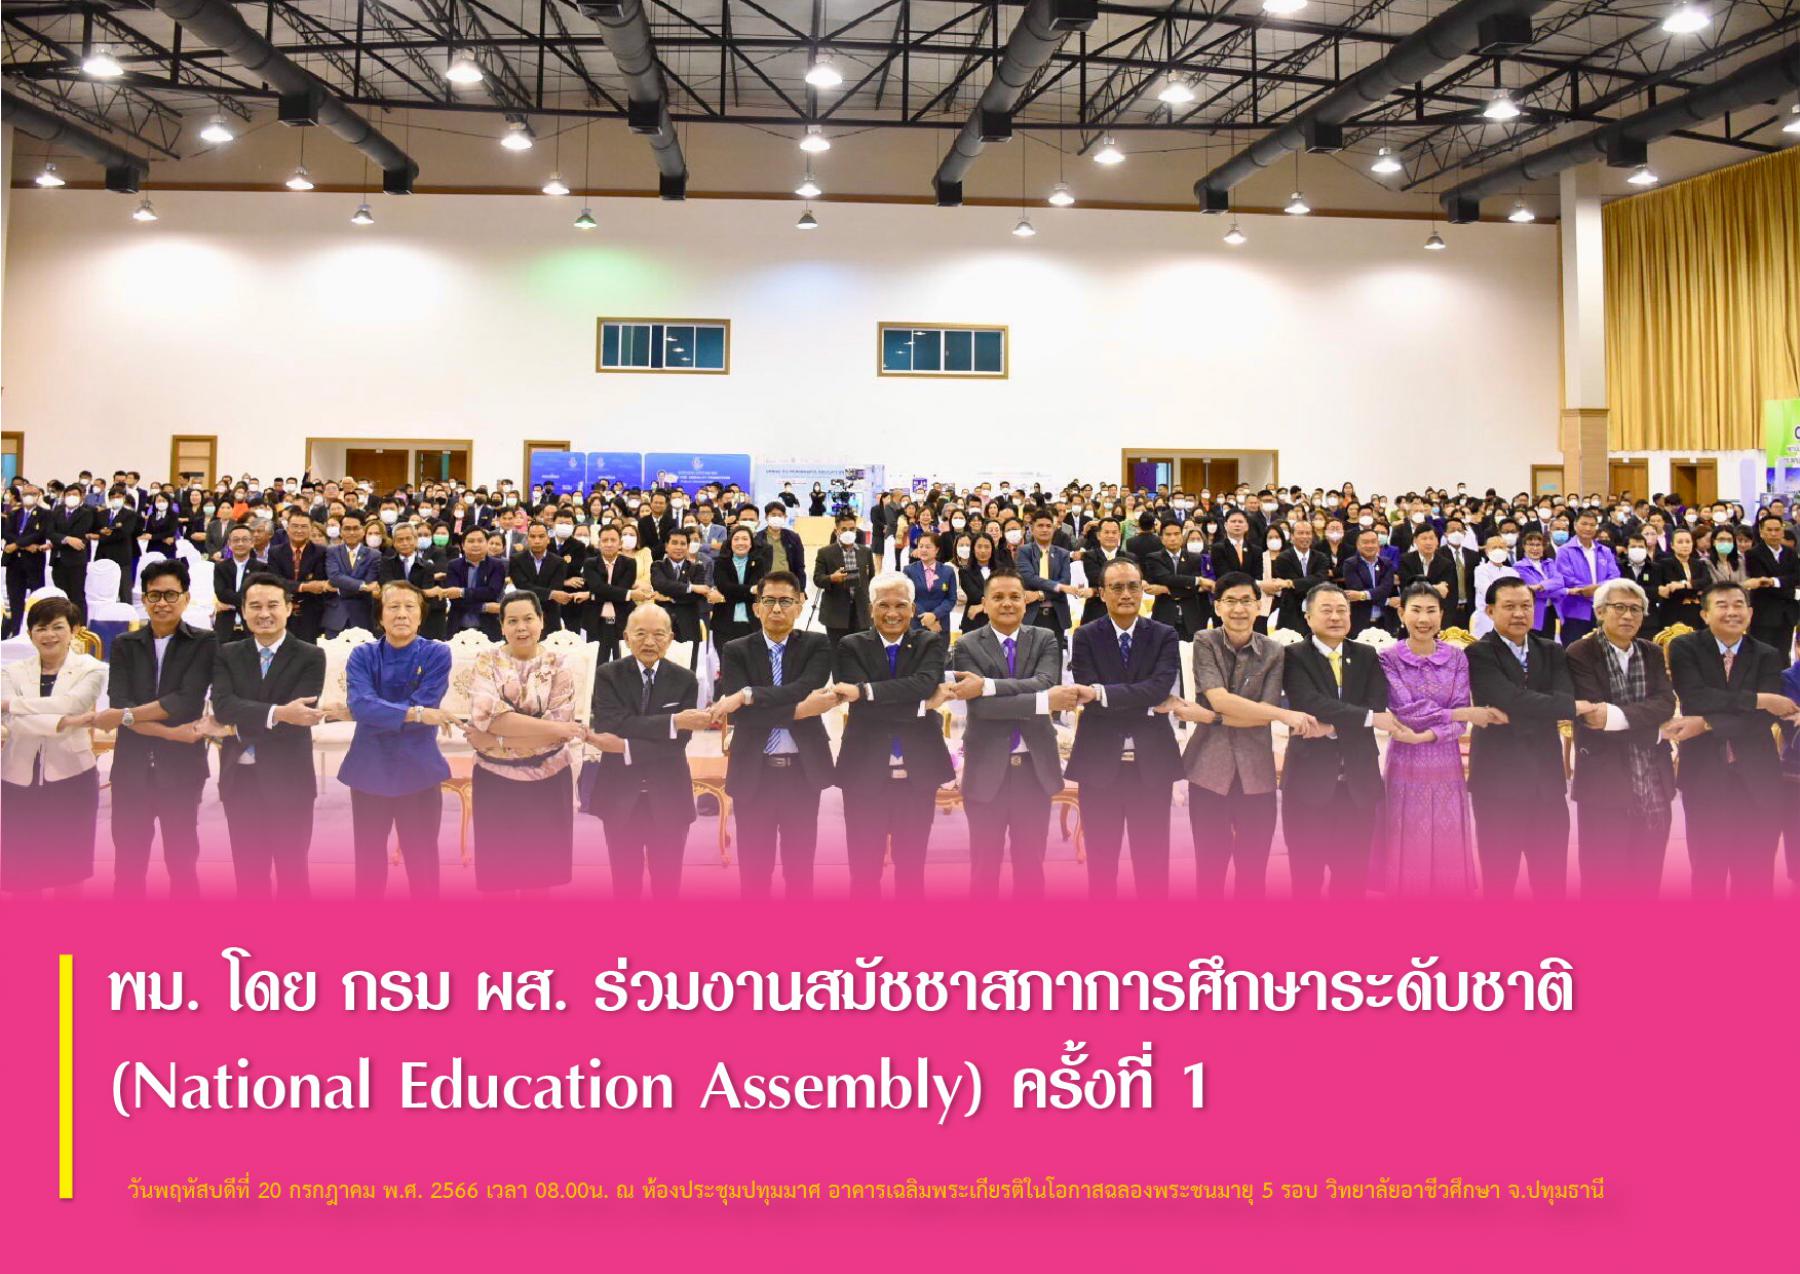 พม. โดย กรม ผส. ร่วมงานสมัชชาสภาการศึกษาระดับชาติ (National Education Assembly) ครั้งที่ 1